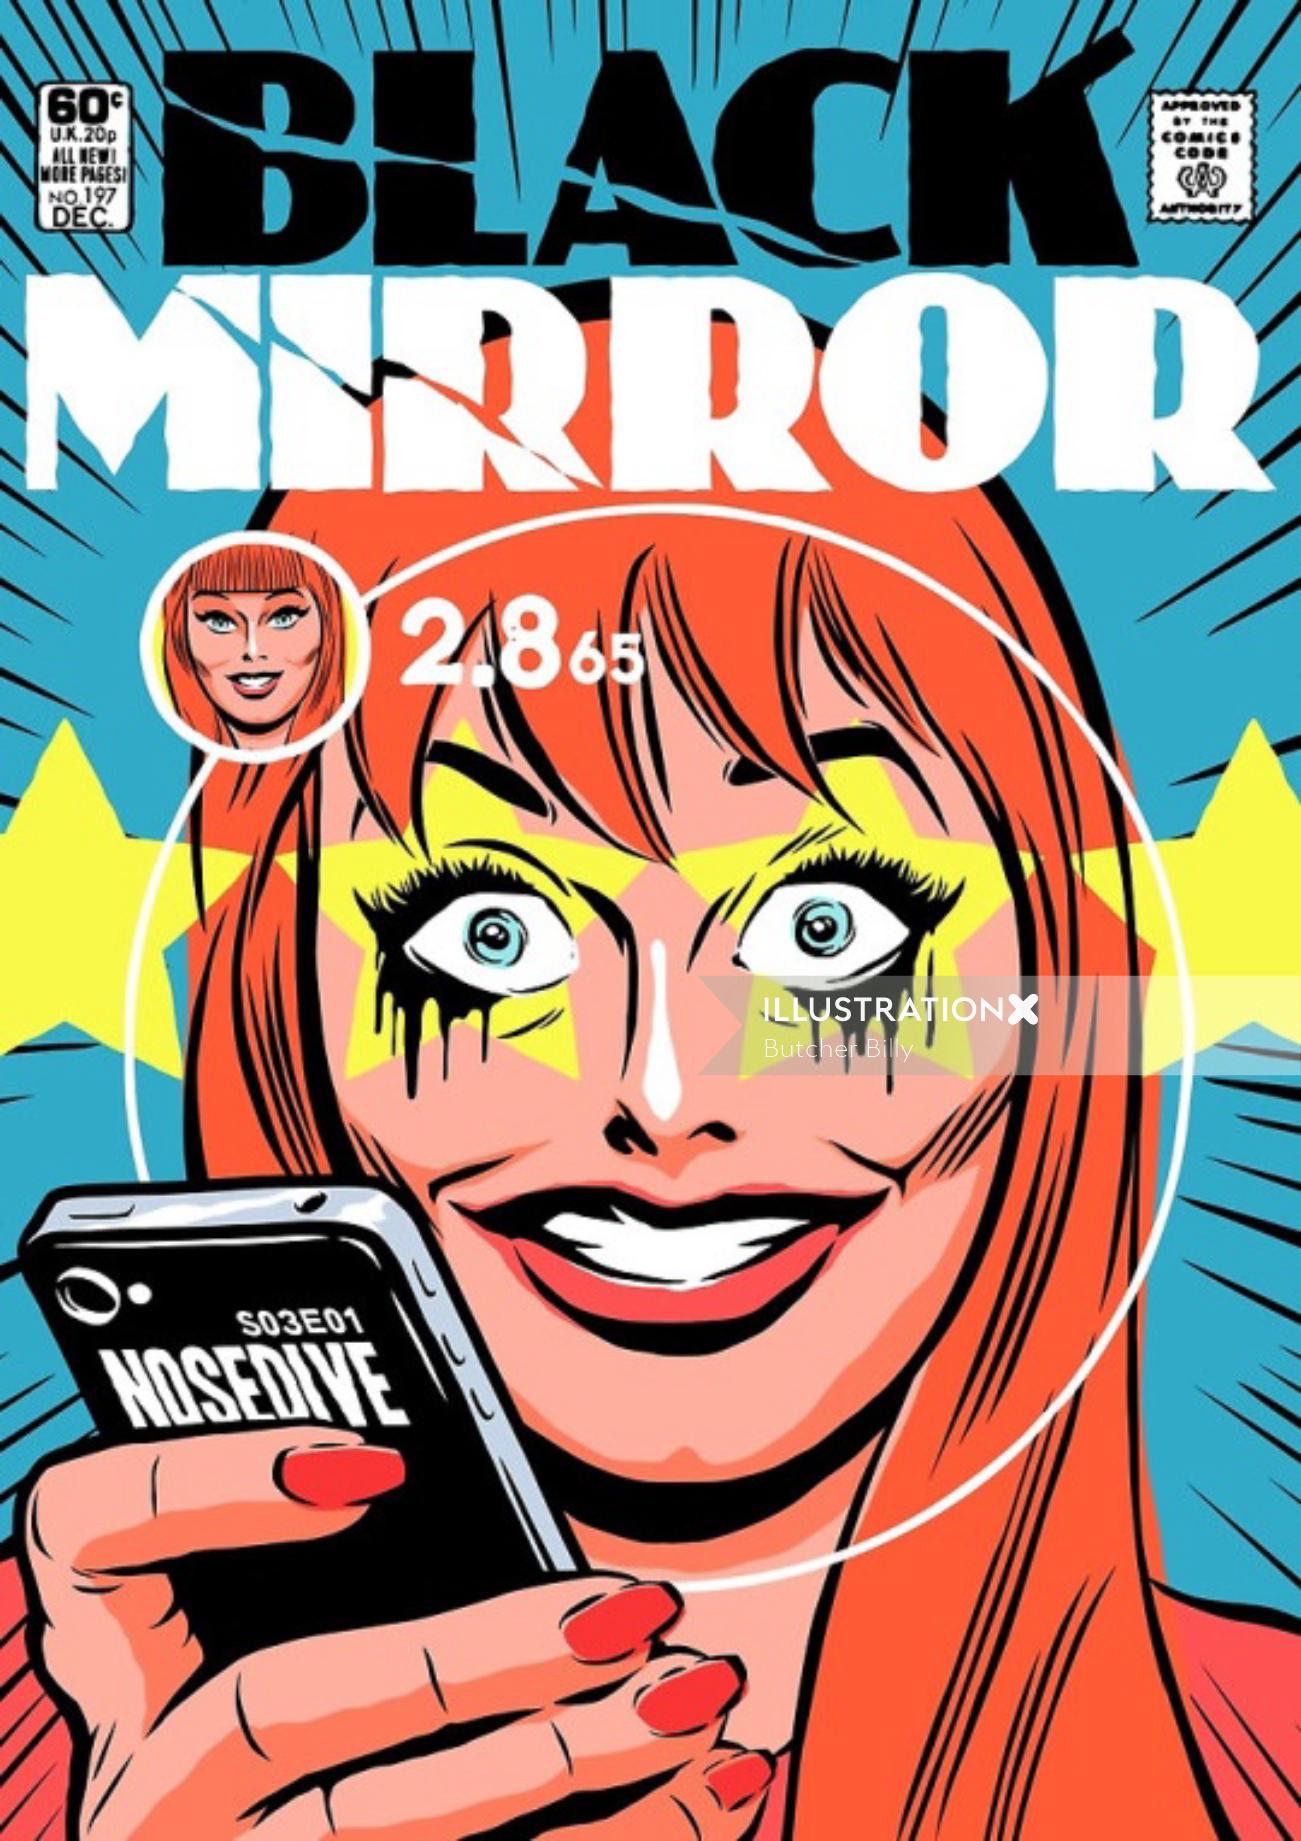 Episodio de Black Mirror Nosedive como una portada de cómic vintage